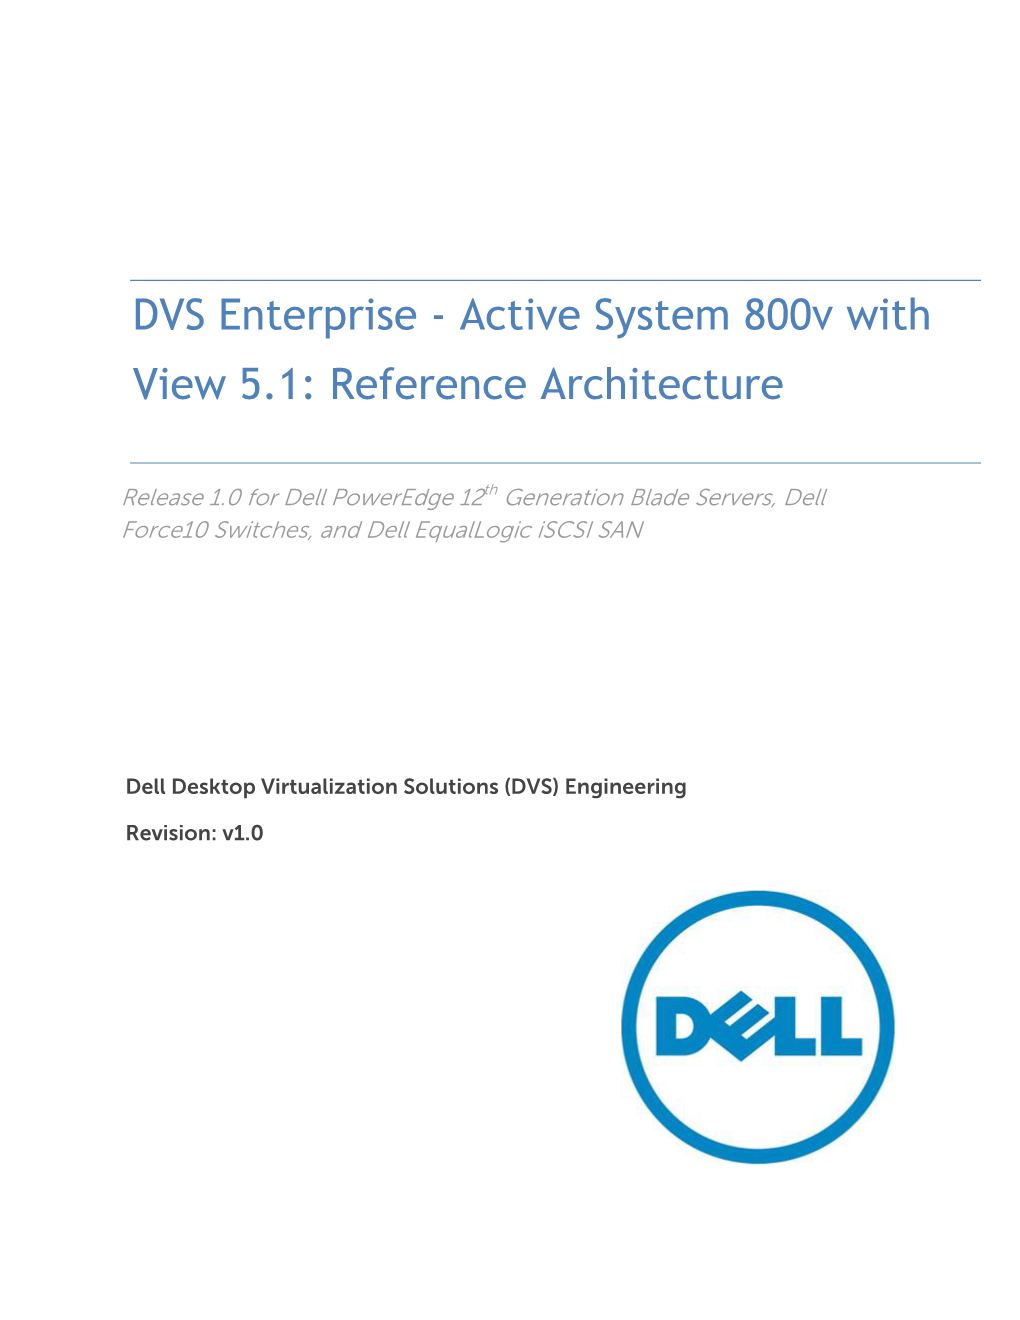 DVS Enterprise - Active System 800V With